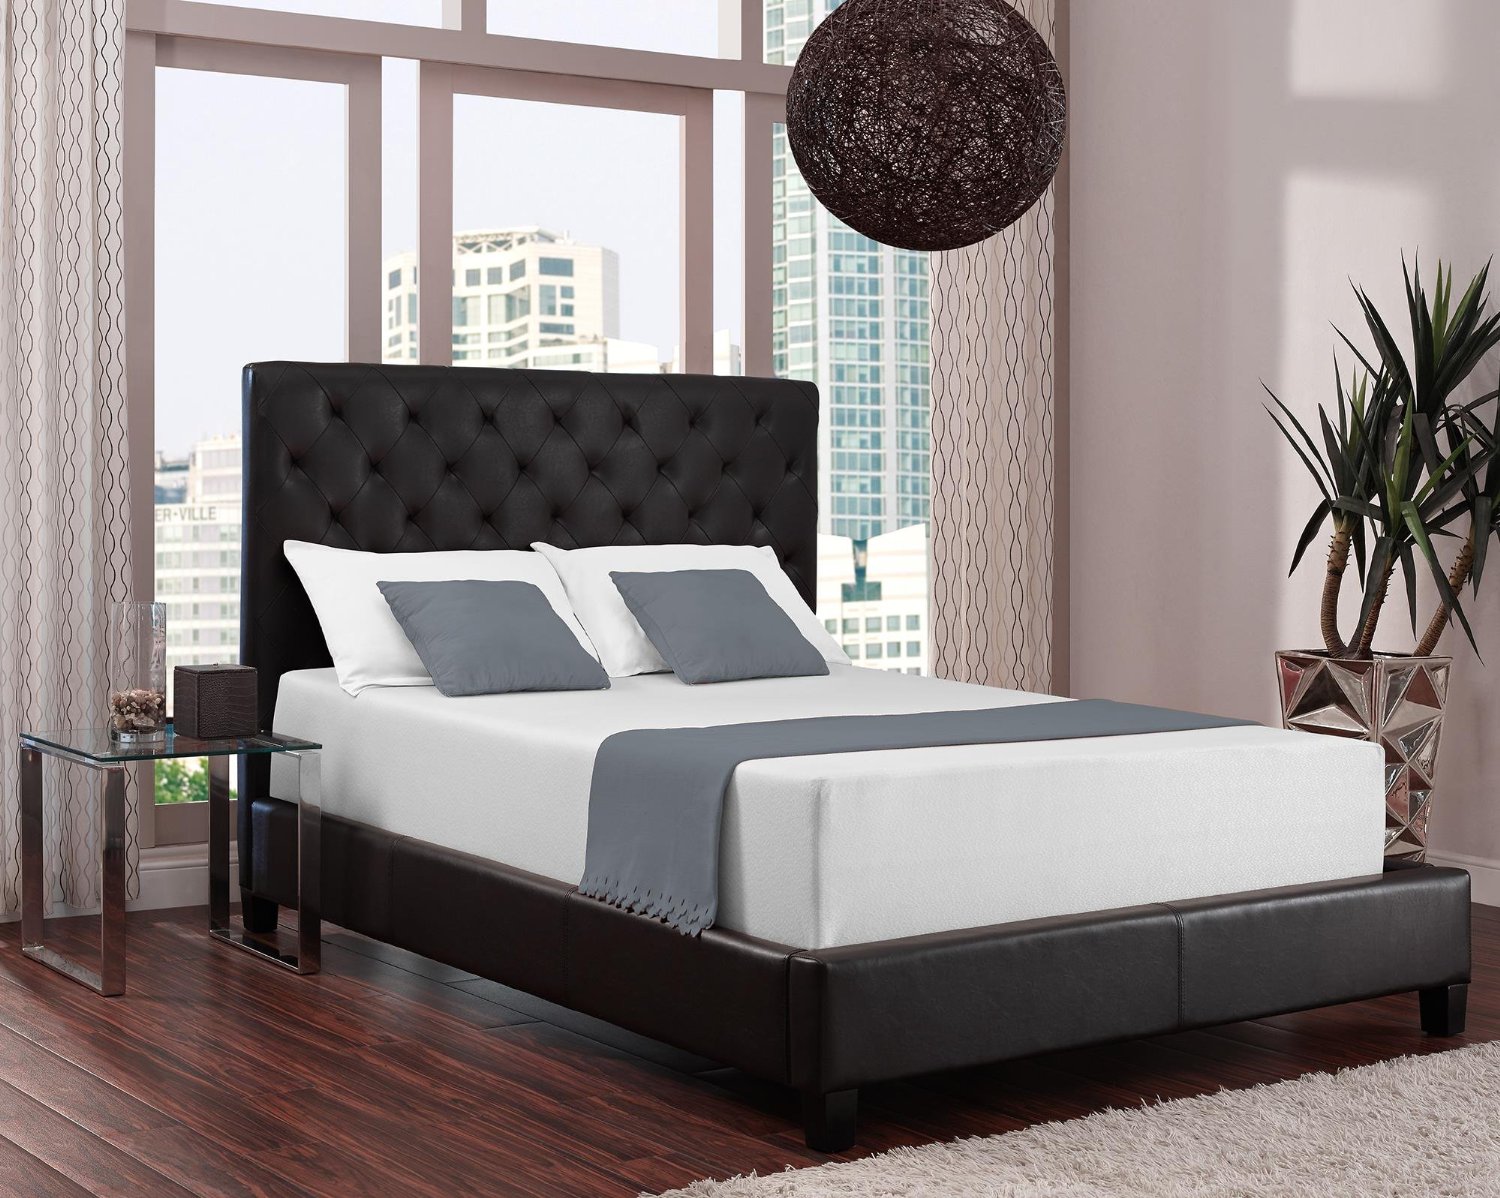 signature sleep foam mattress review